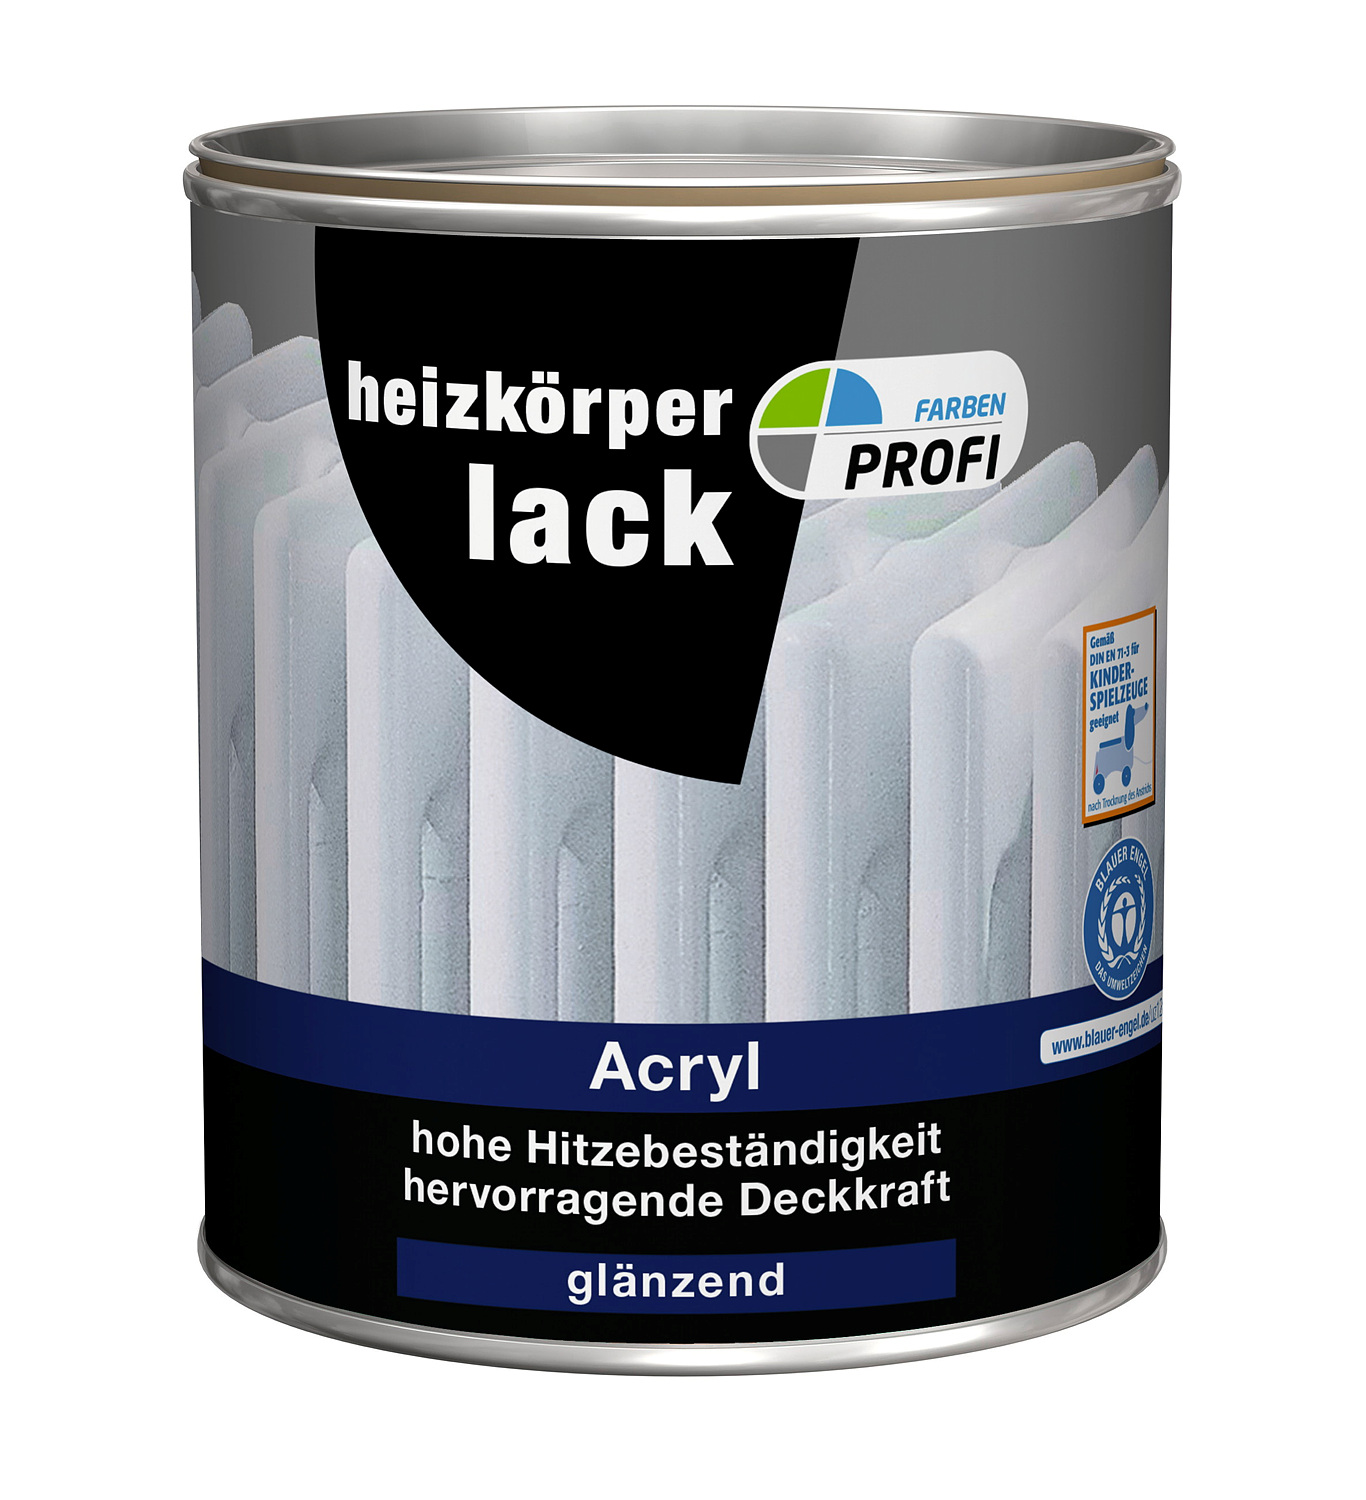 PROFI Acryl Heizkörperlack 2,5 Liter Weiß, glänzend